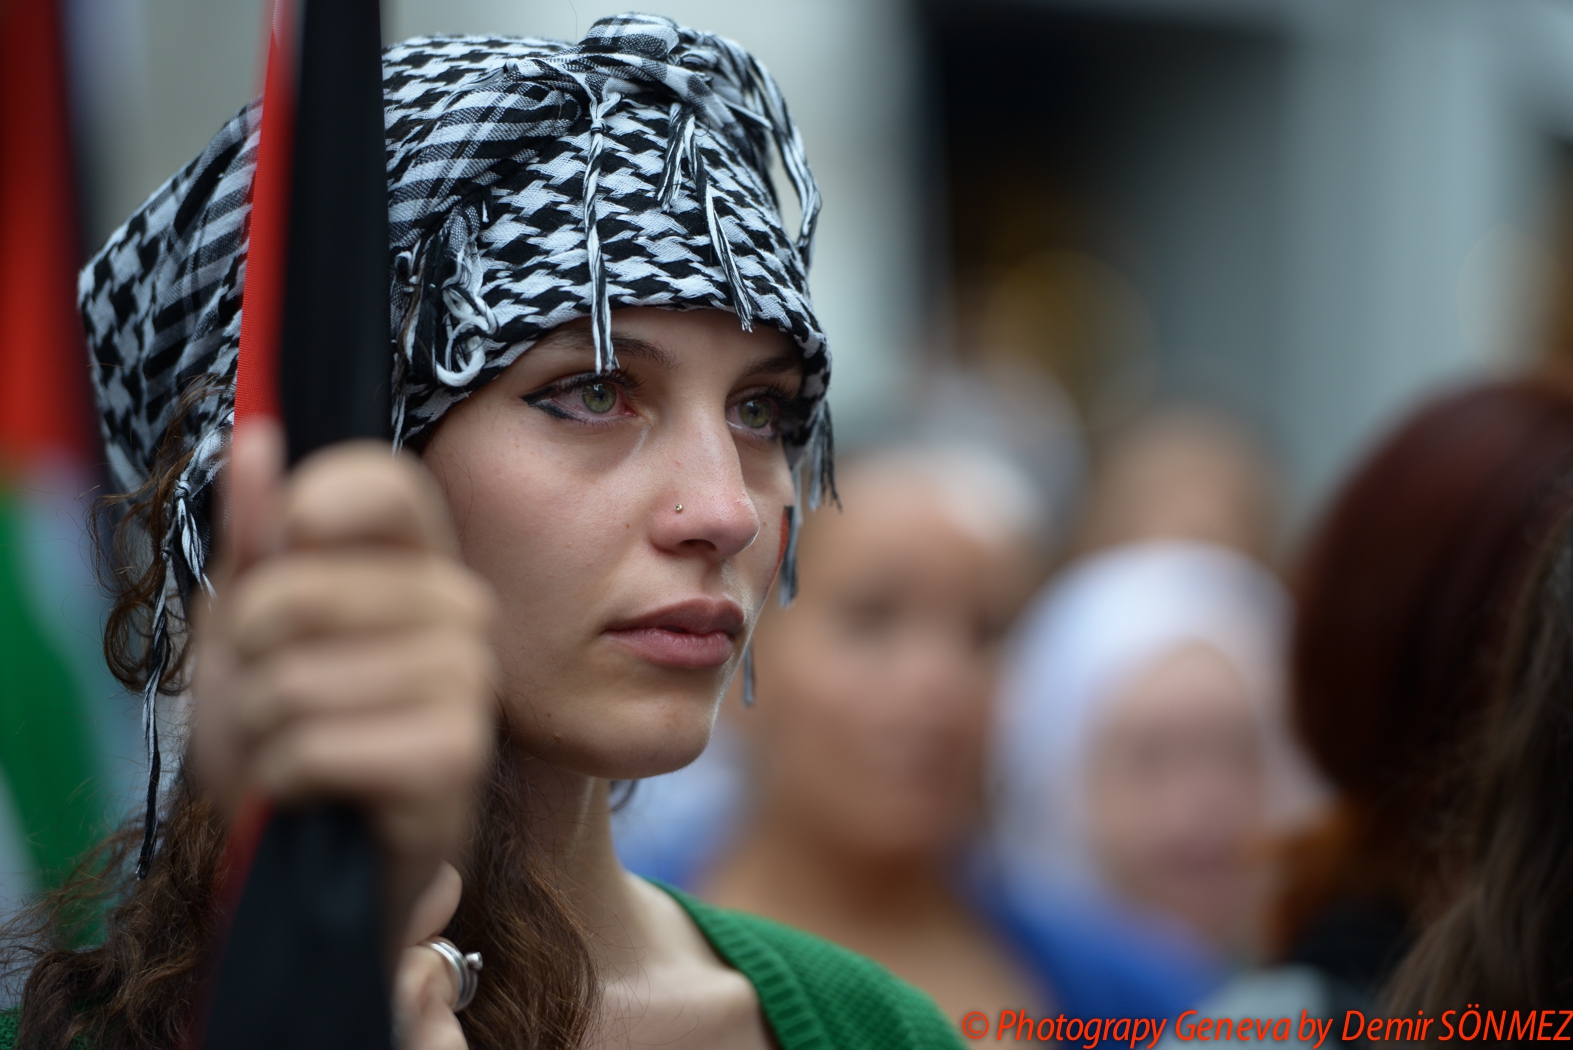 Grande manifestation pacifique à Genève en soutien au peuple Palestinien-6433.jpg